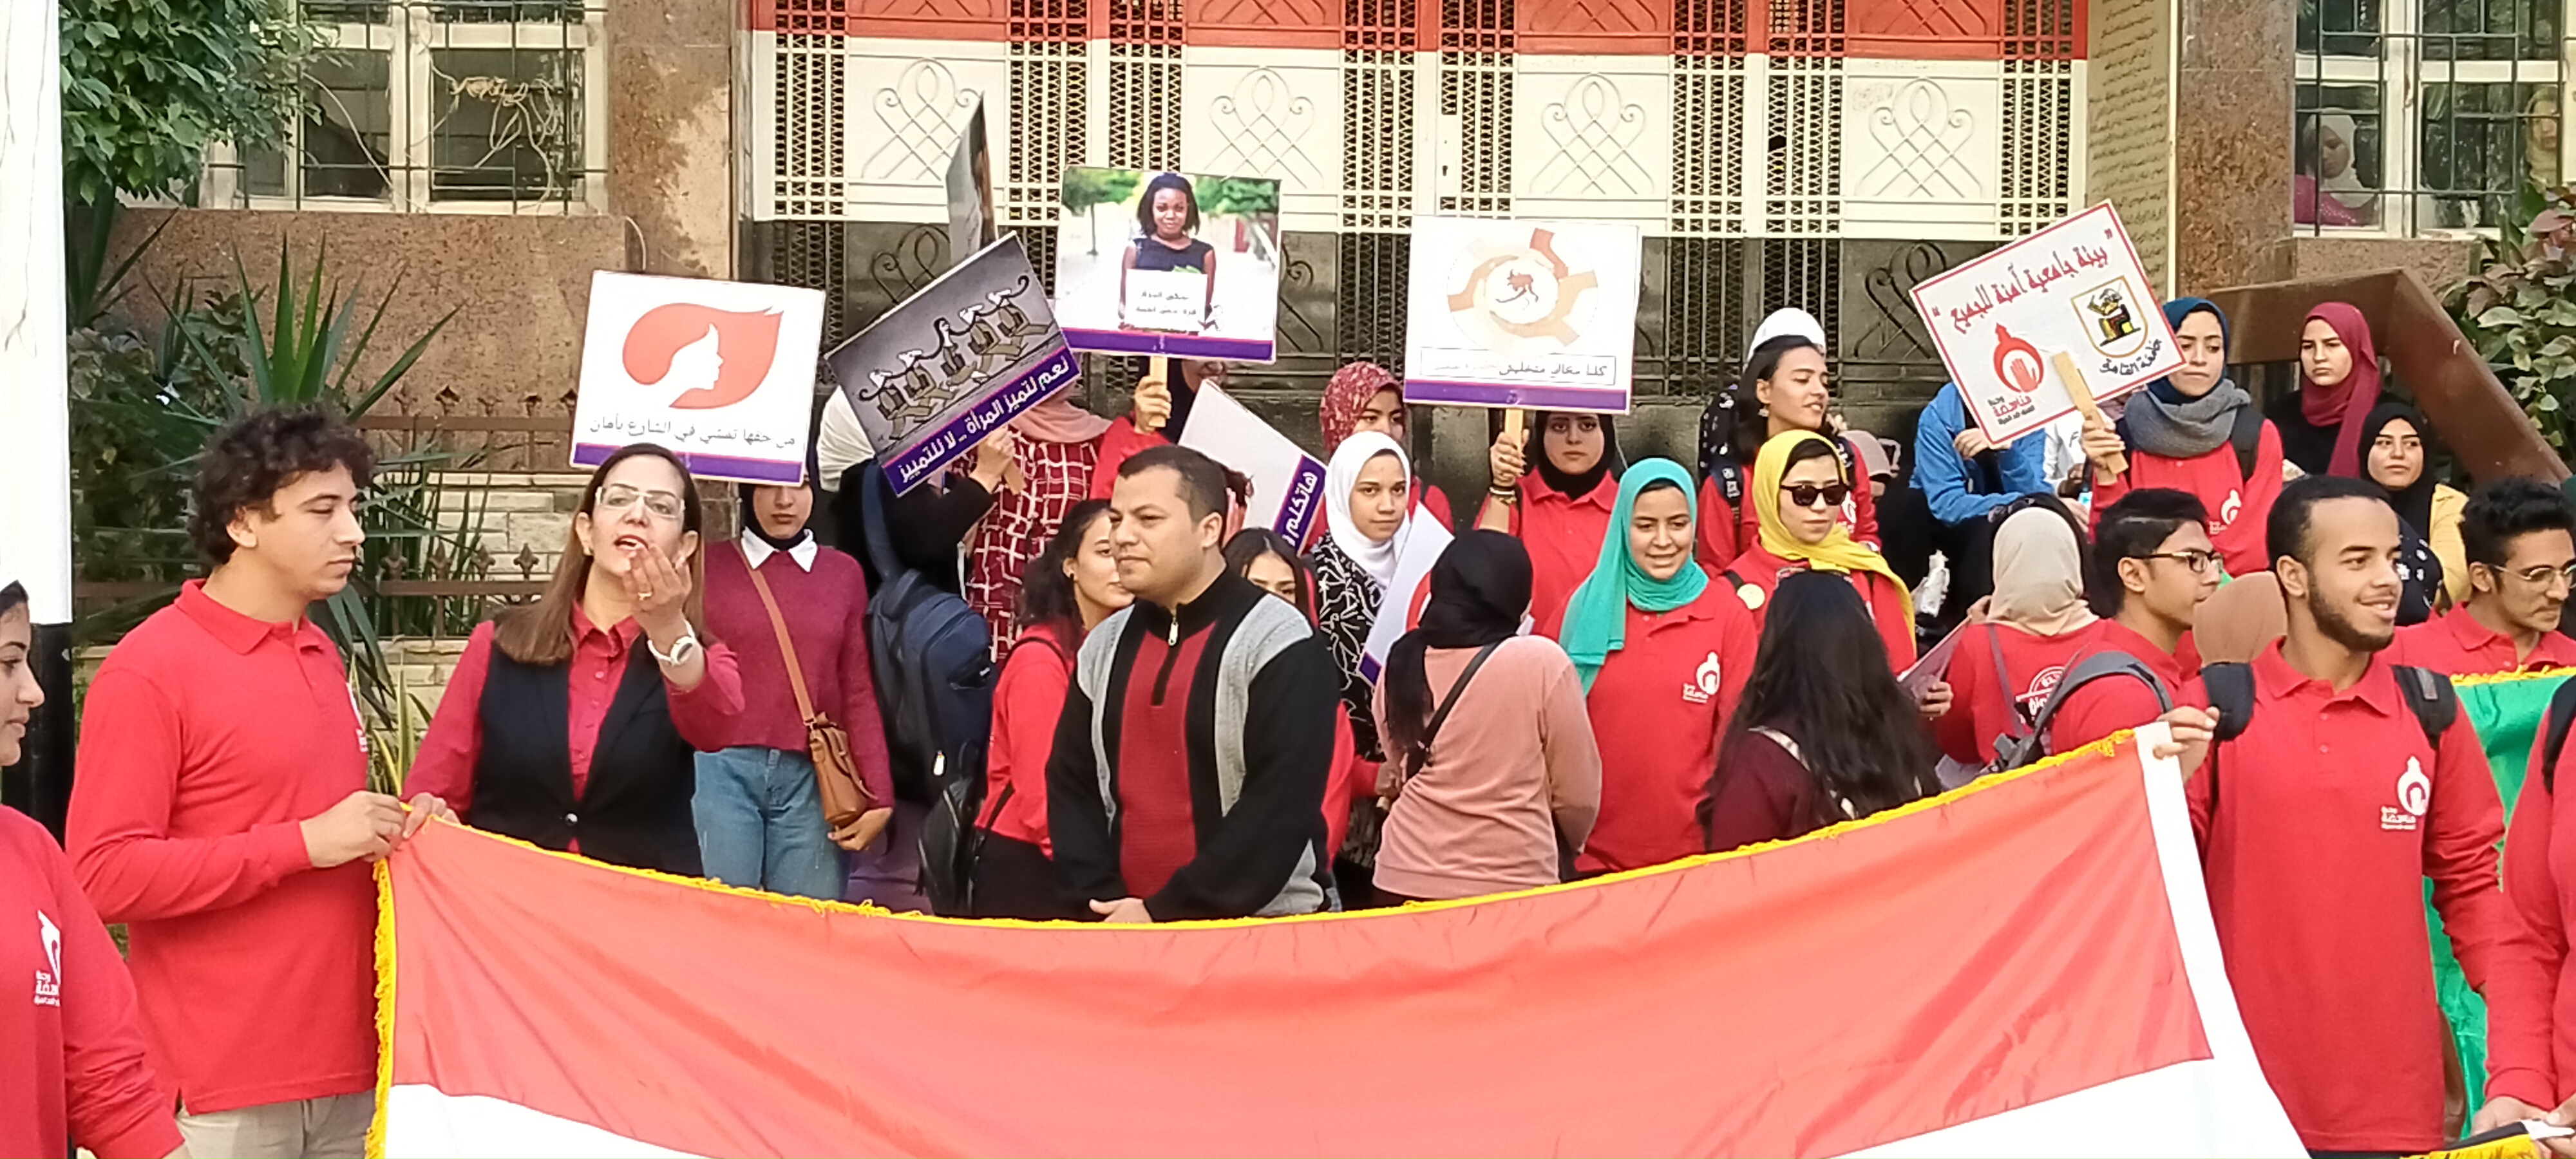 مسيرة وحدة مناهضة العنف ضد المرأة بجامعة القاهرة (5)